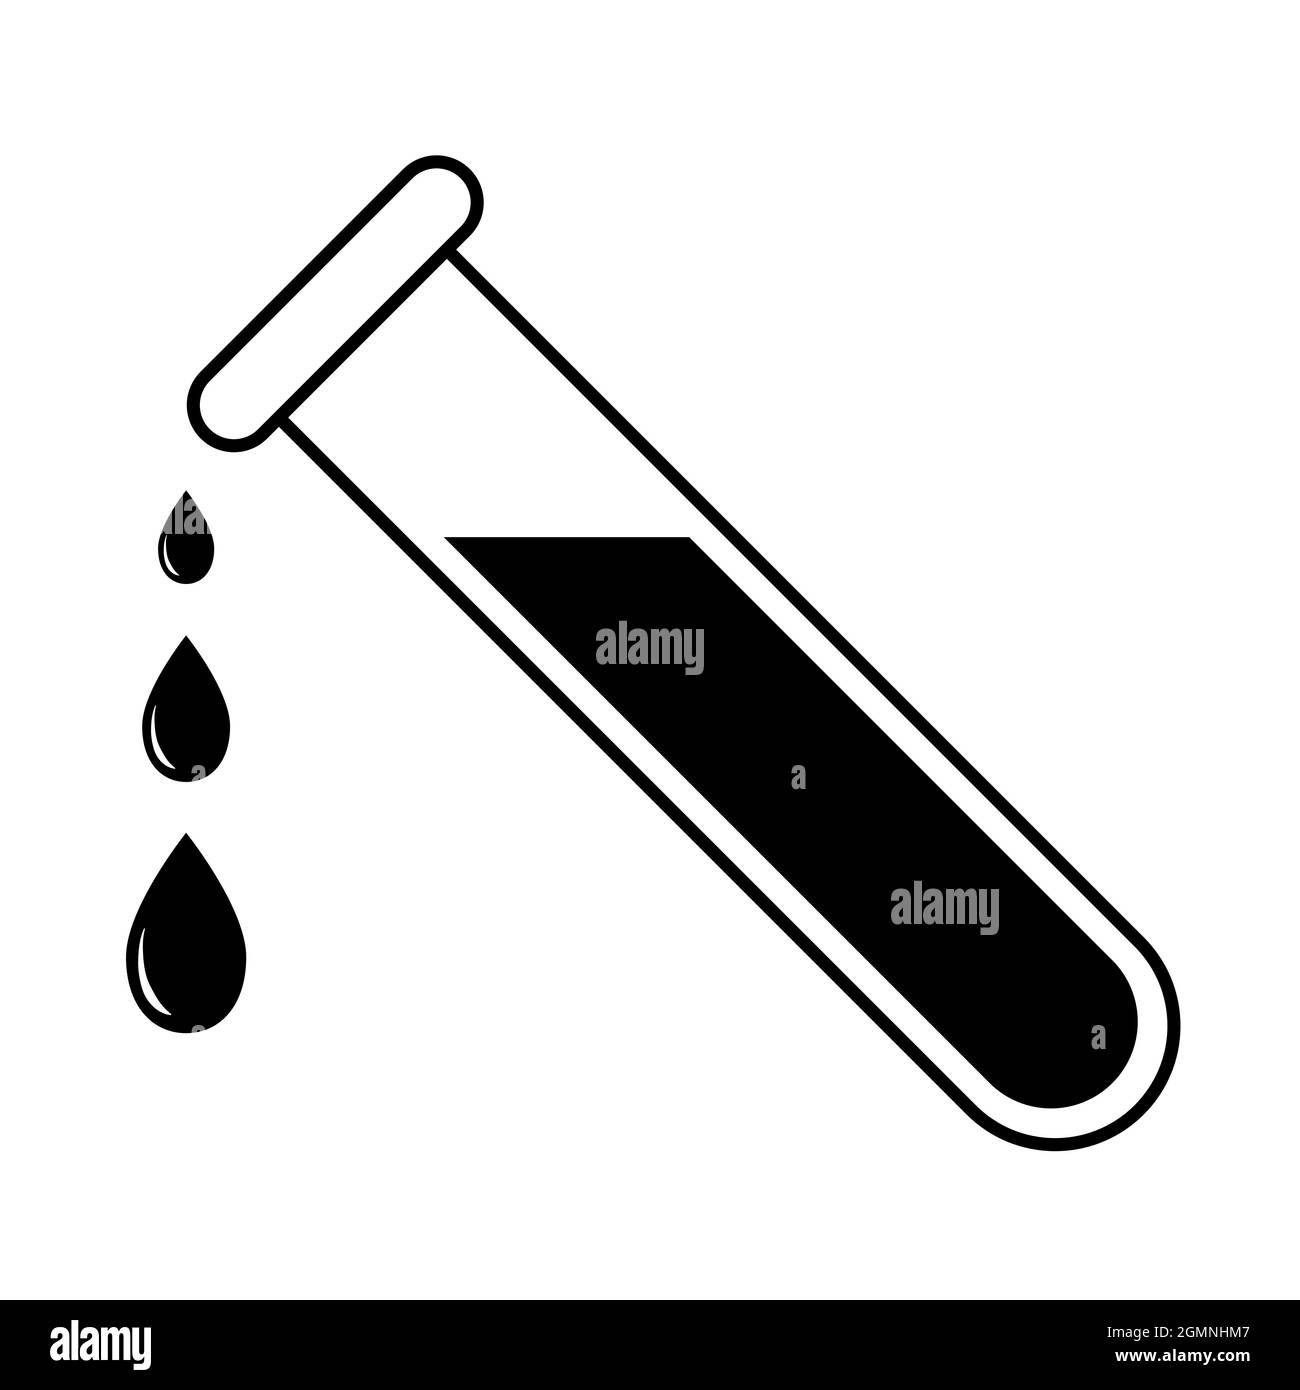 Placa de identificación de caída del tubo de ensayo Icon laboratorio médico y químico Ilustración del Vector